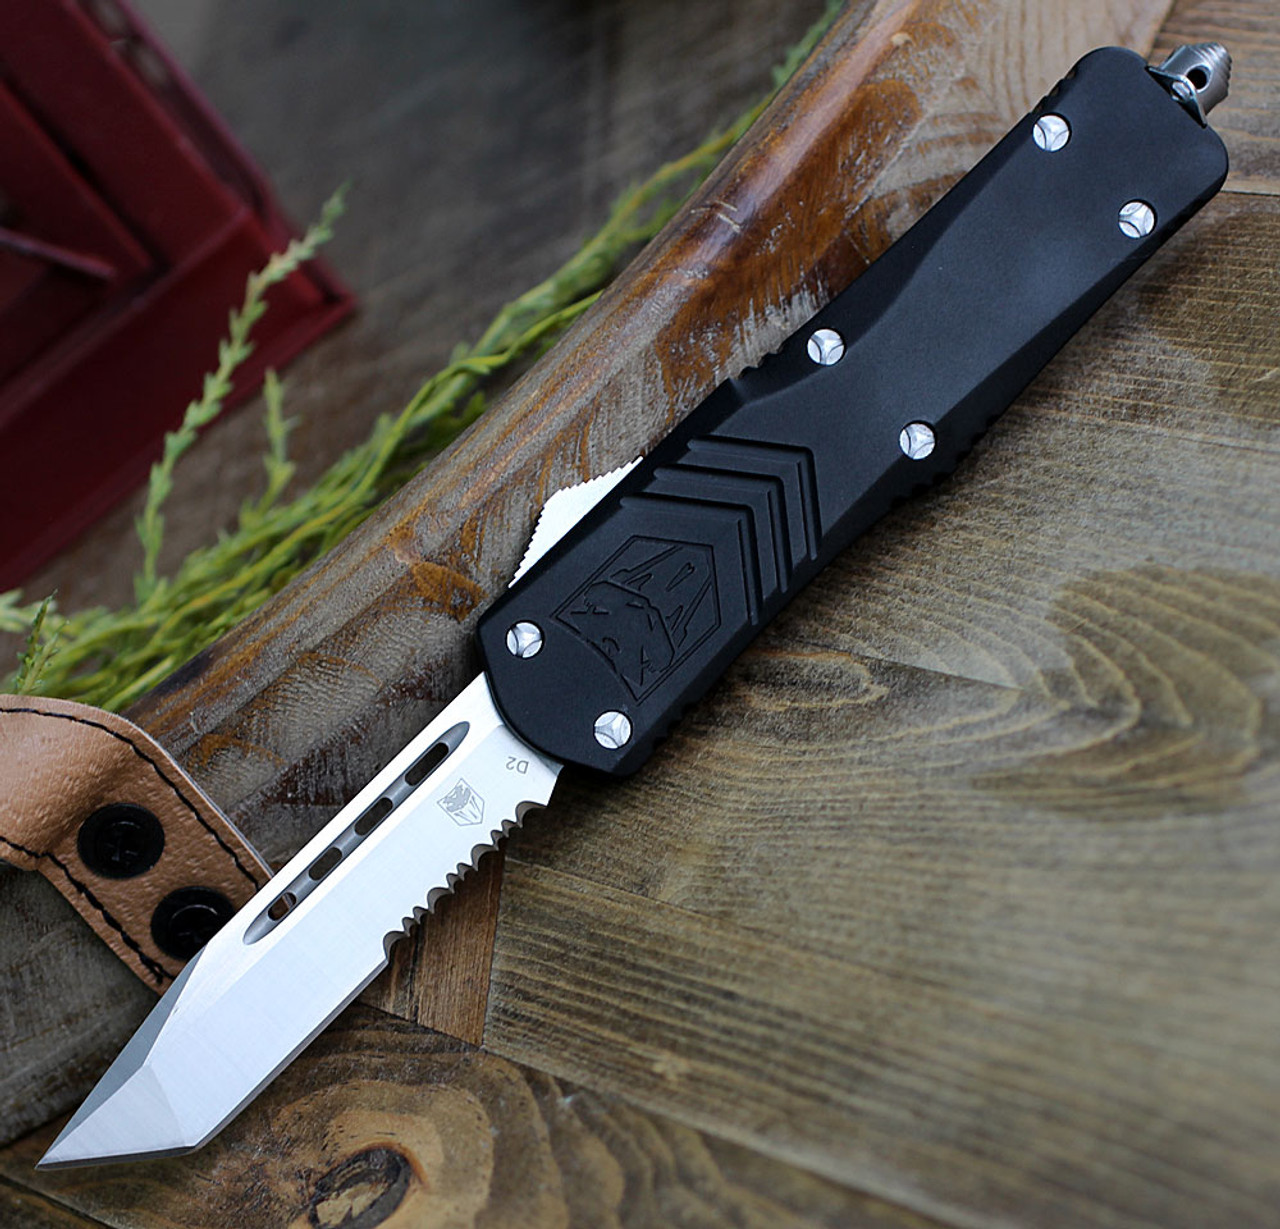 CobraTec Black FS-X OTF Knife CTKLBLKFS-XLTS, 3.75" D2 Steel Tanto Serrated Blade, Black Aluminum Handle